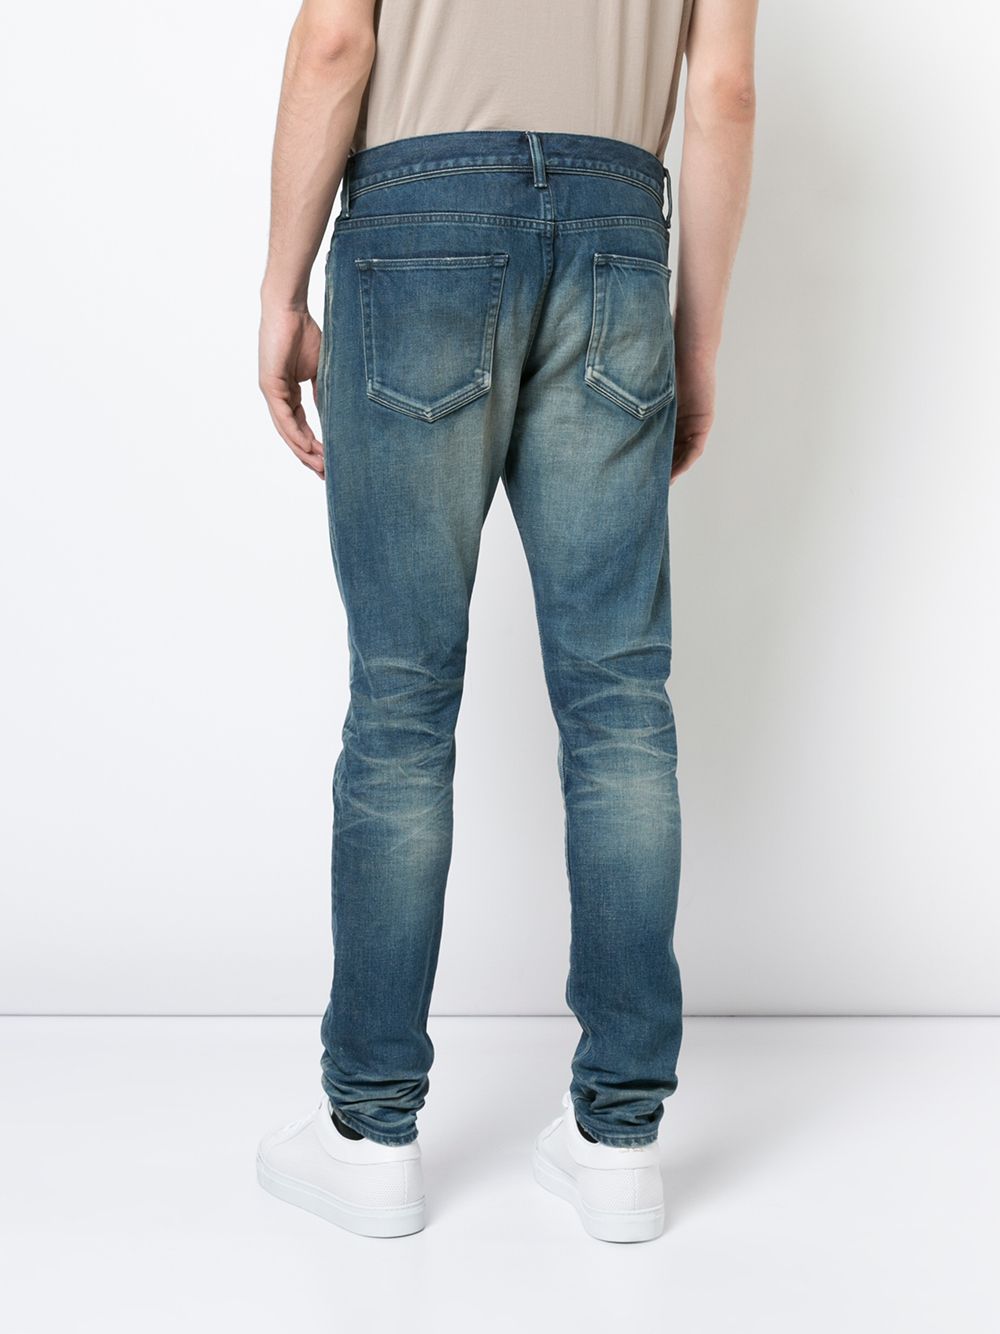 фото John elliott джинсы с выбеленным эффектом